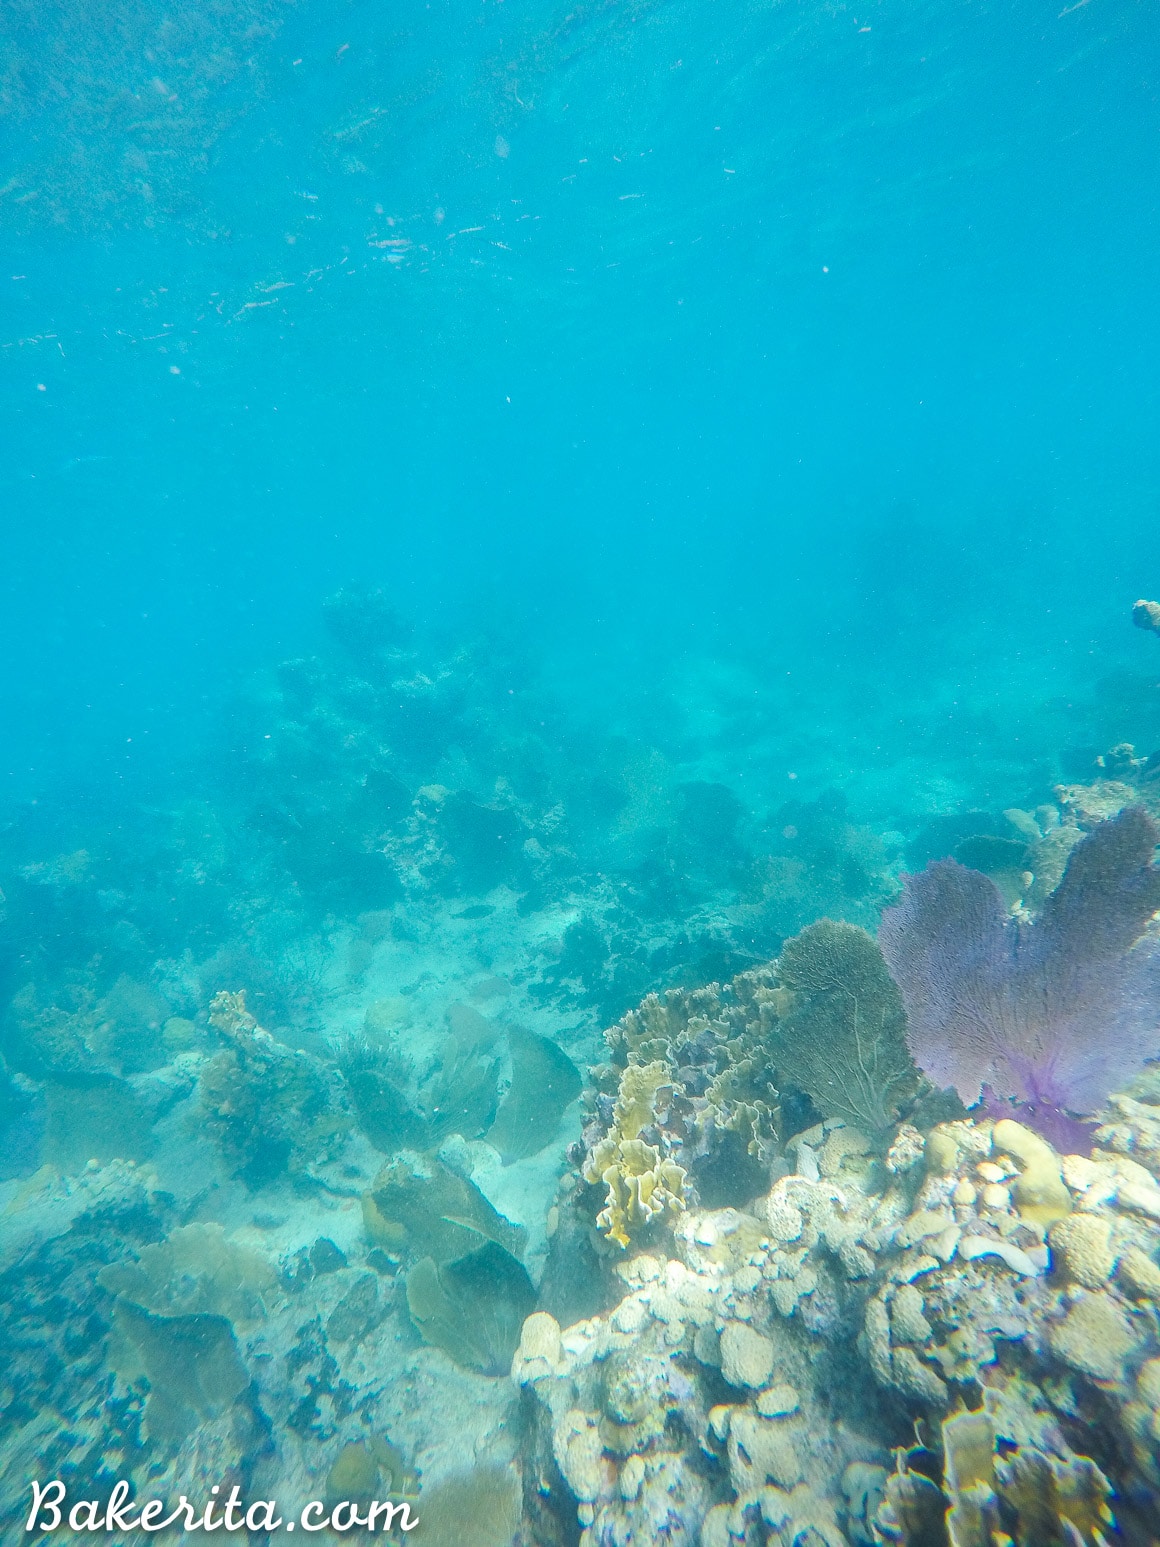 Coral Reef at Playa Ancon, Trinidad, Cuba